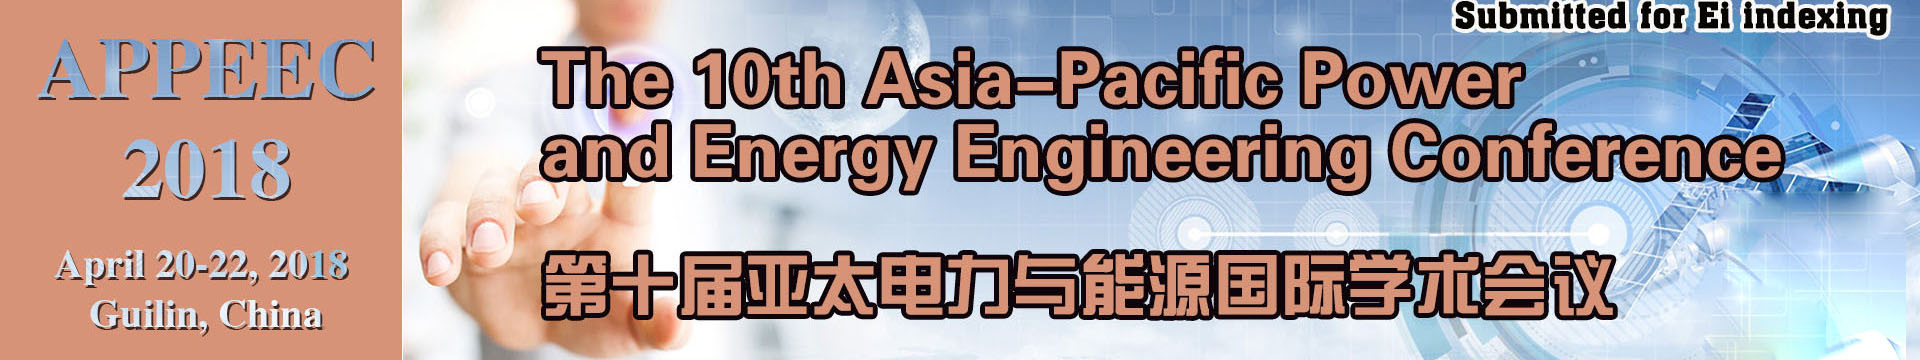 Ei检索：第十届亚太电力与能源国际学术会议(APPEEC 2018)